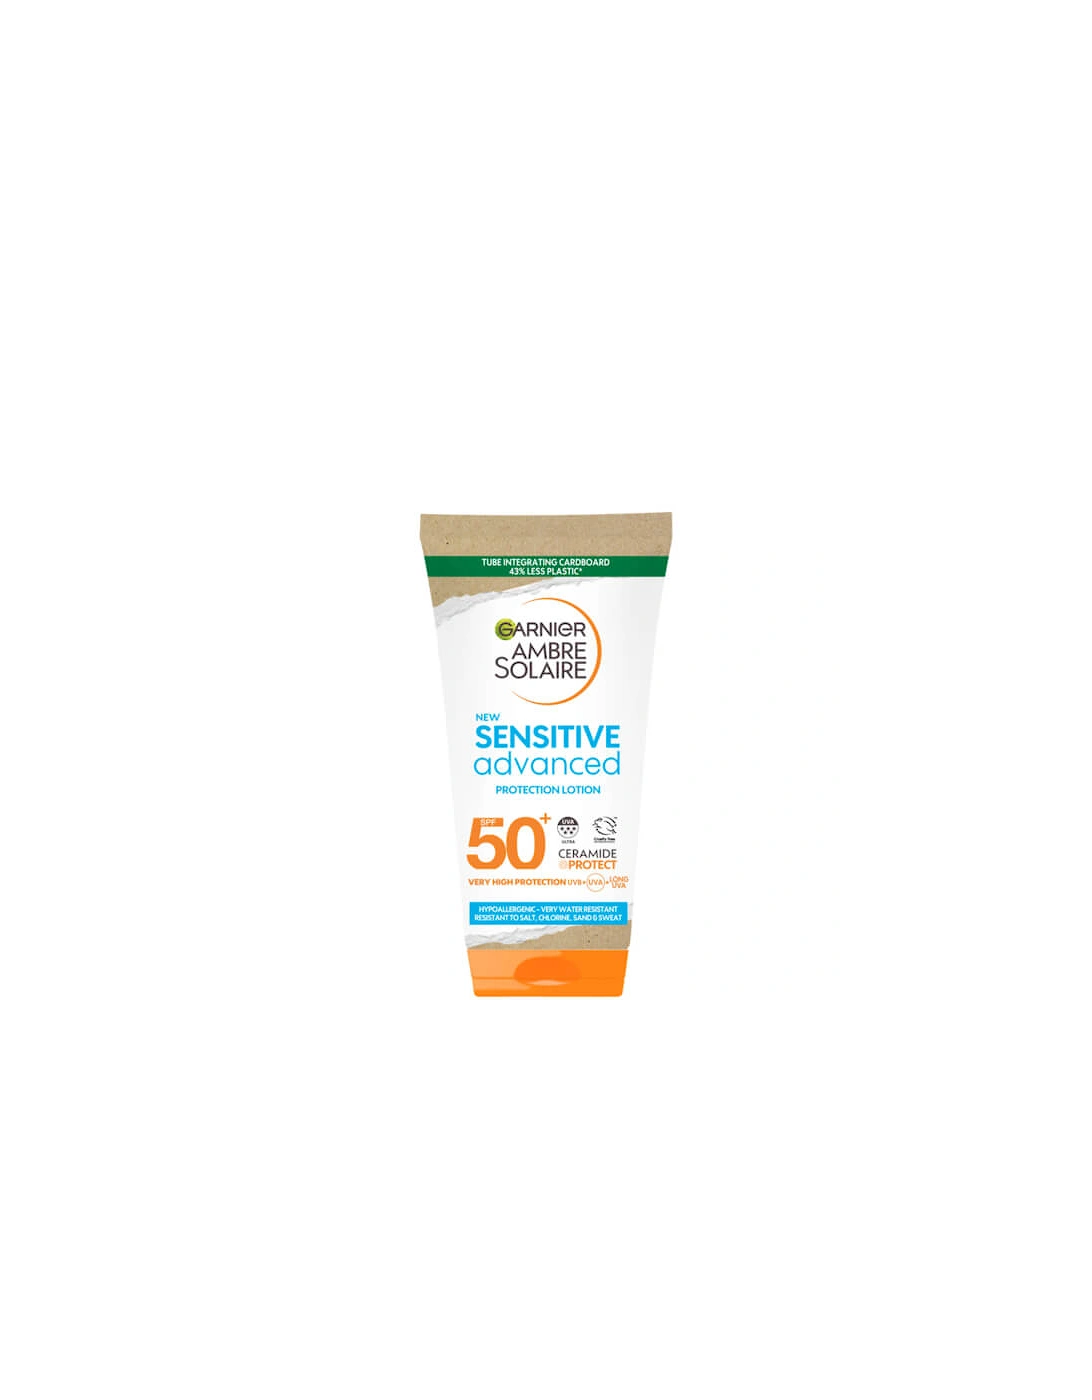 Ambre Solaire Mini Sensitive Hypoallergenic Sun Protection Cream SPF50 50ml, 2 of 1